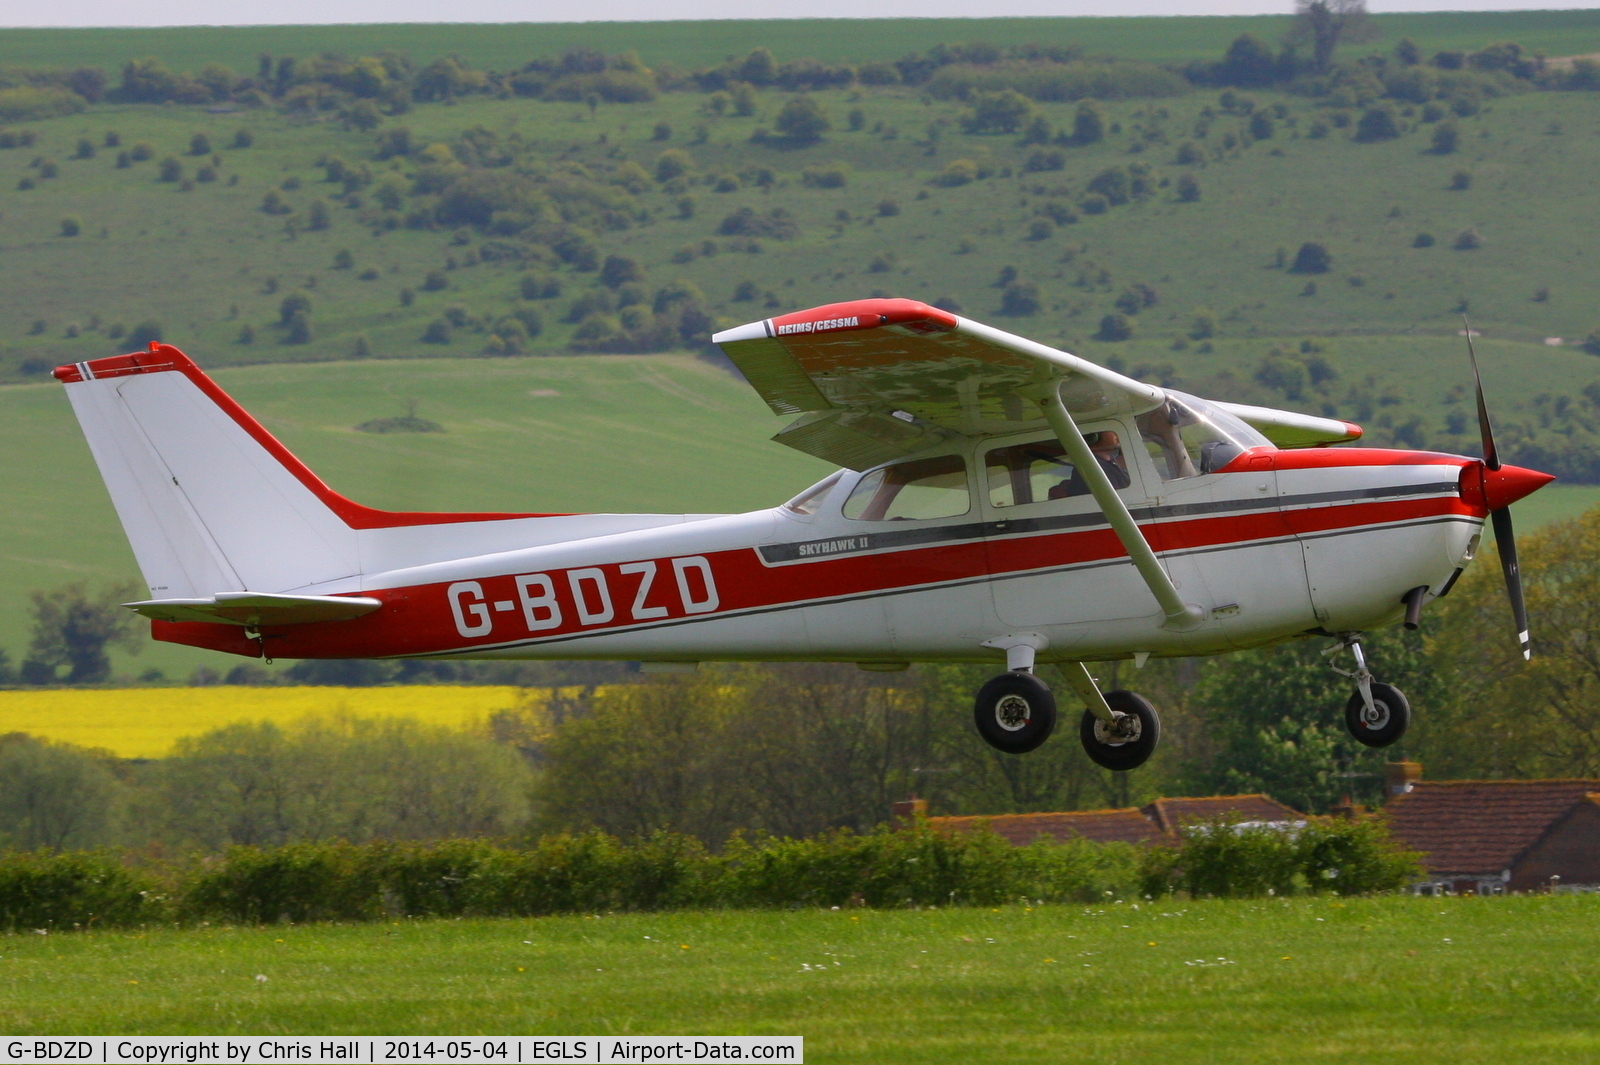 G-BDZD, 1976 Reims F172M Skyhawk Skyhawk C/N 1478, at Old Sarum